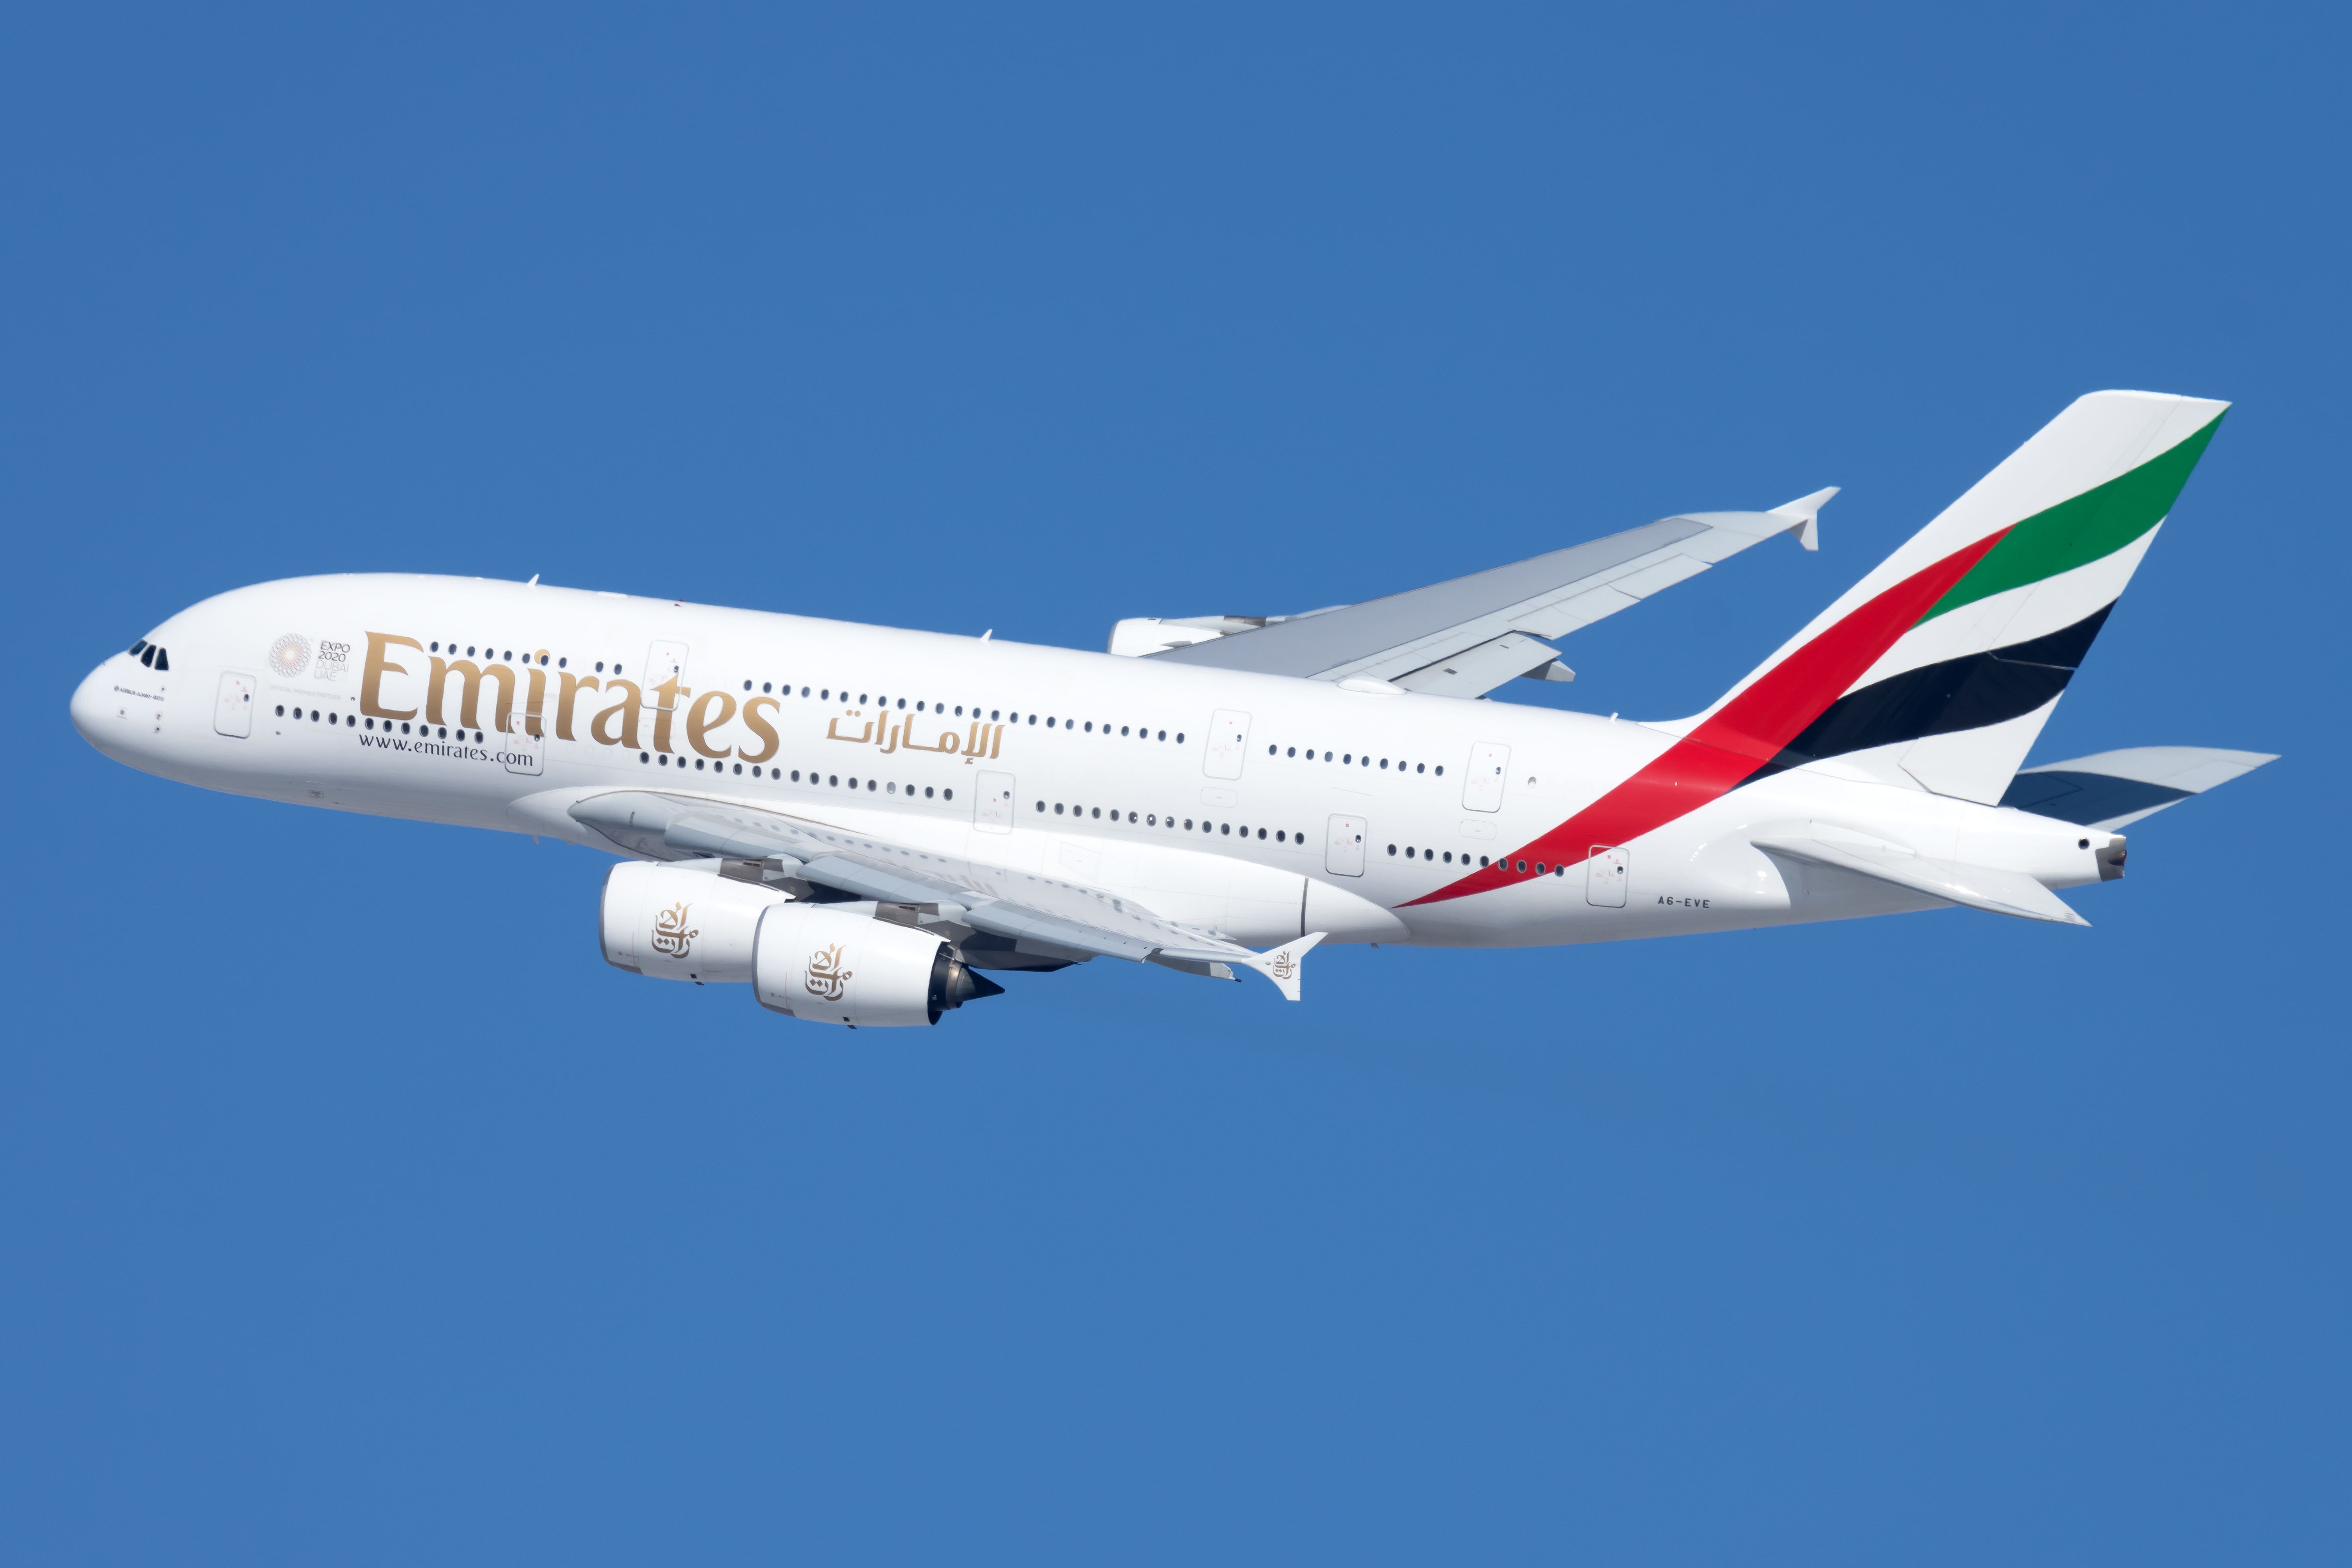 Emirates Airbus A380 in flight